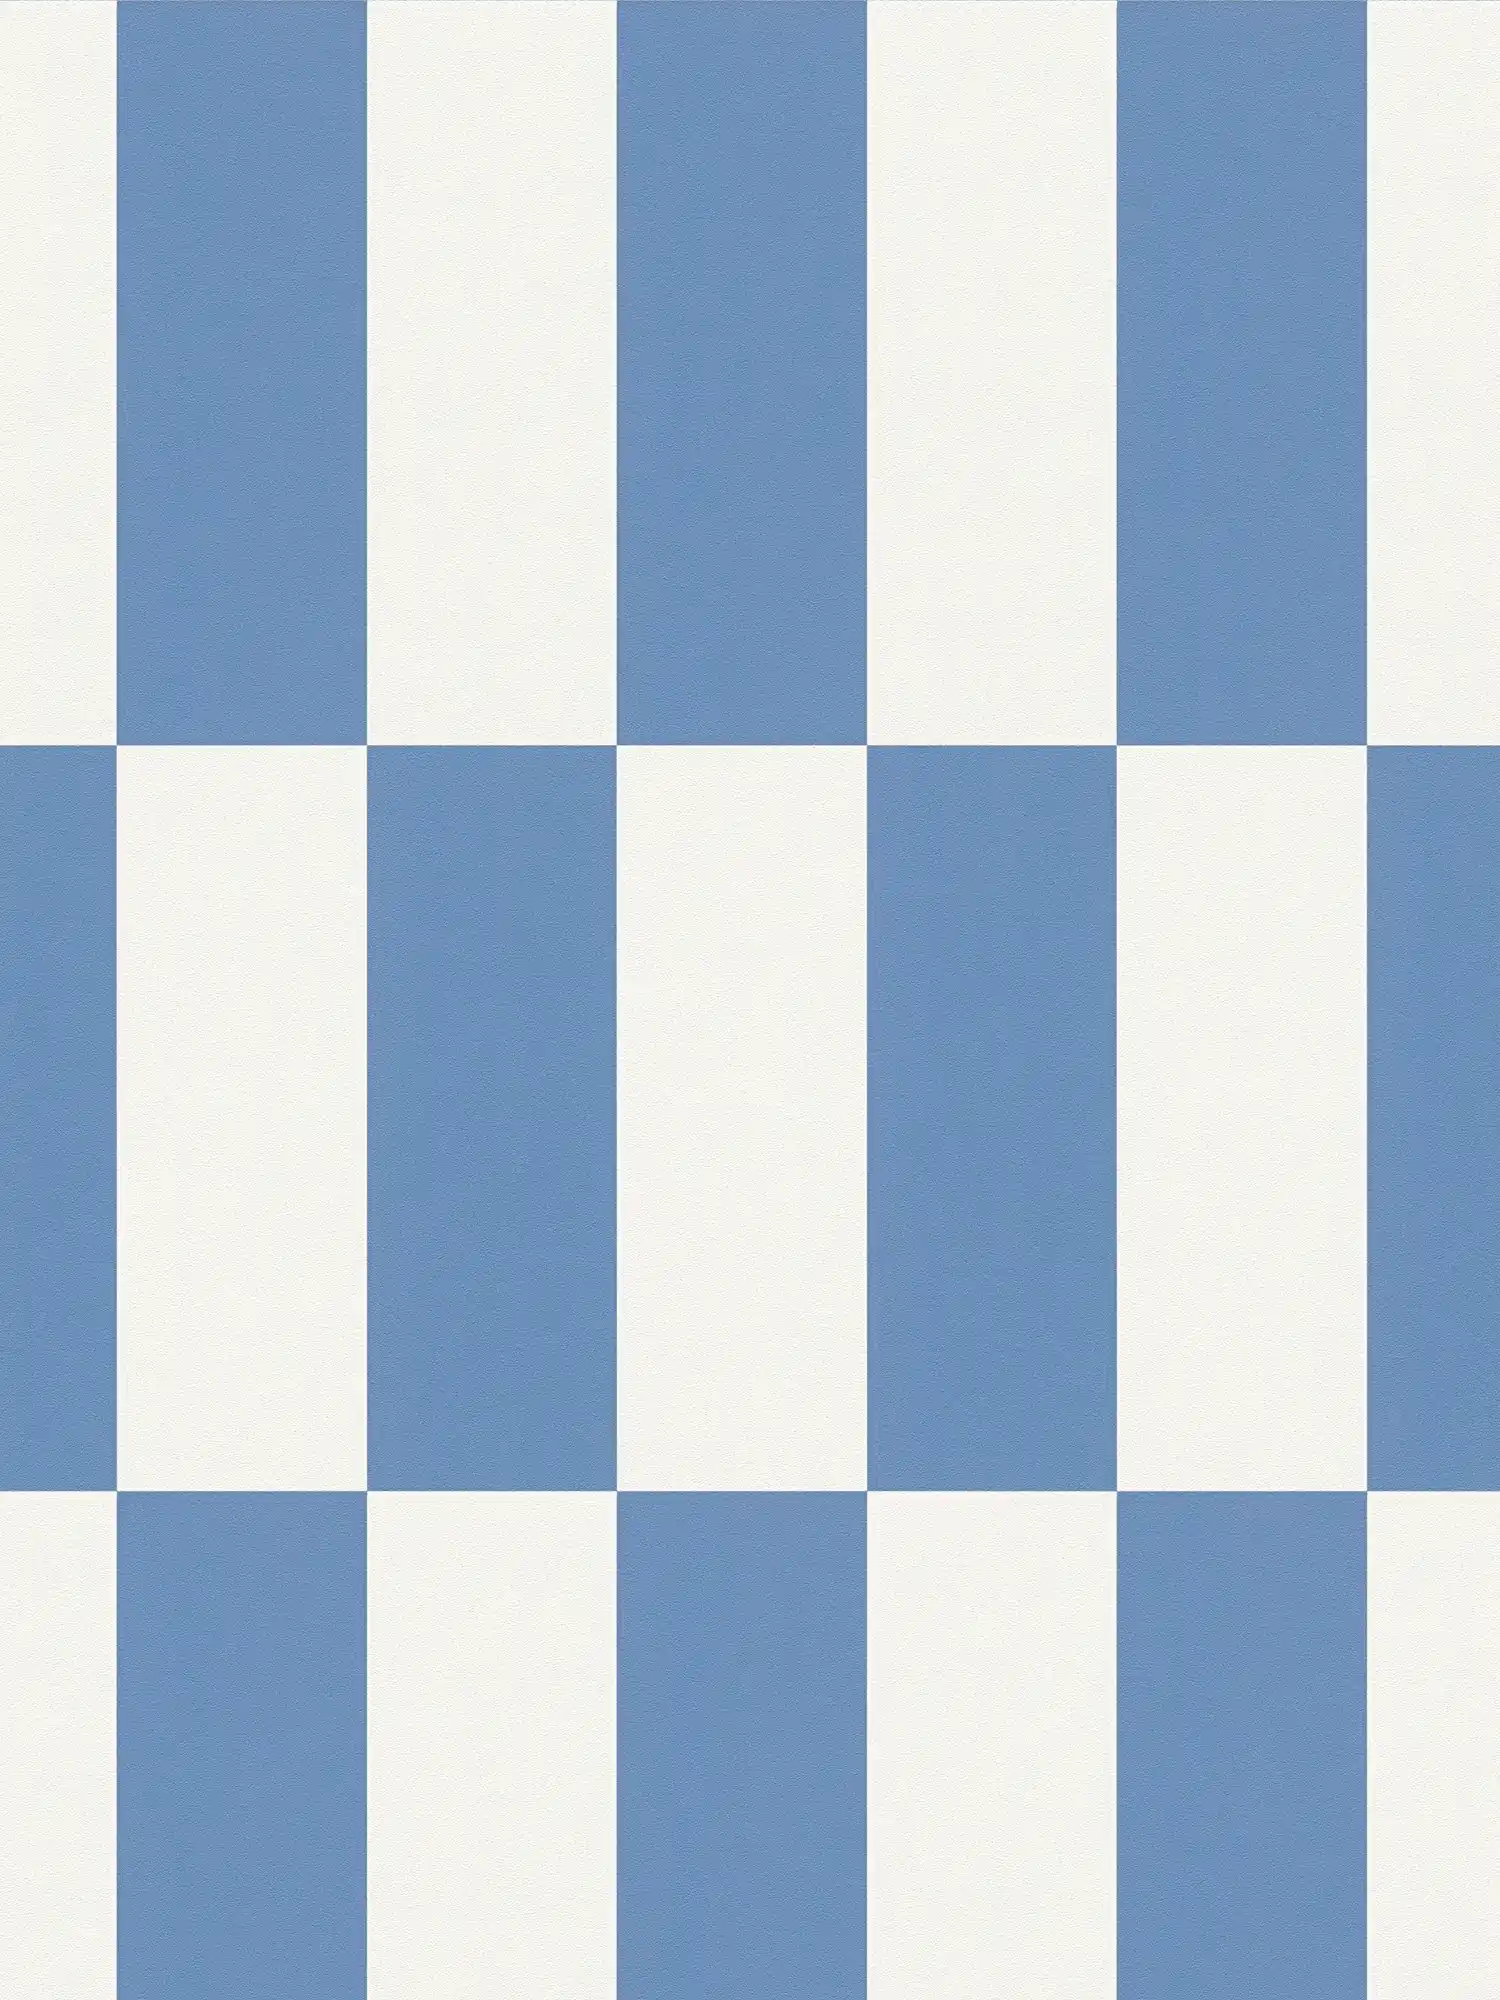         Vliesbehang met grafisch vierkant patroon - blauw, wit
    